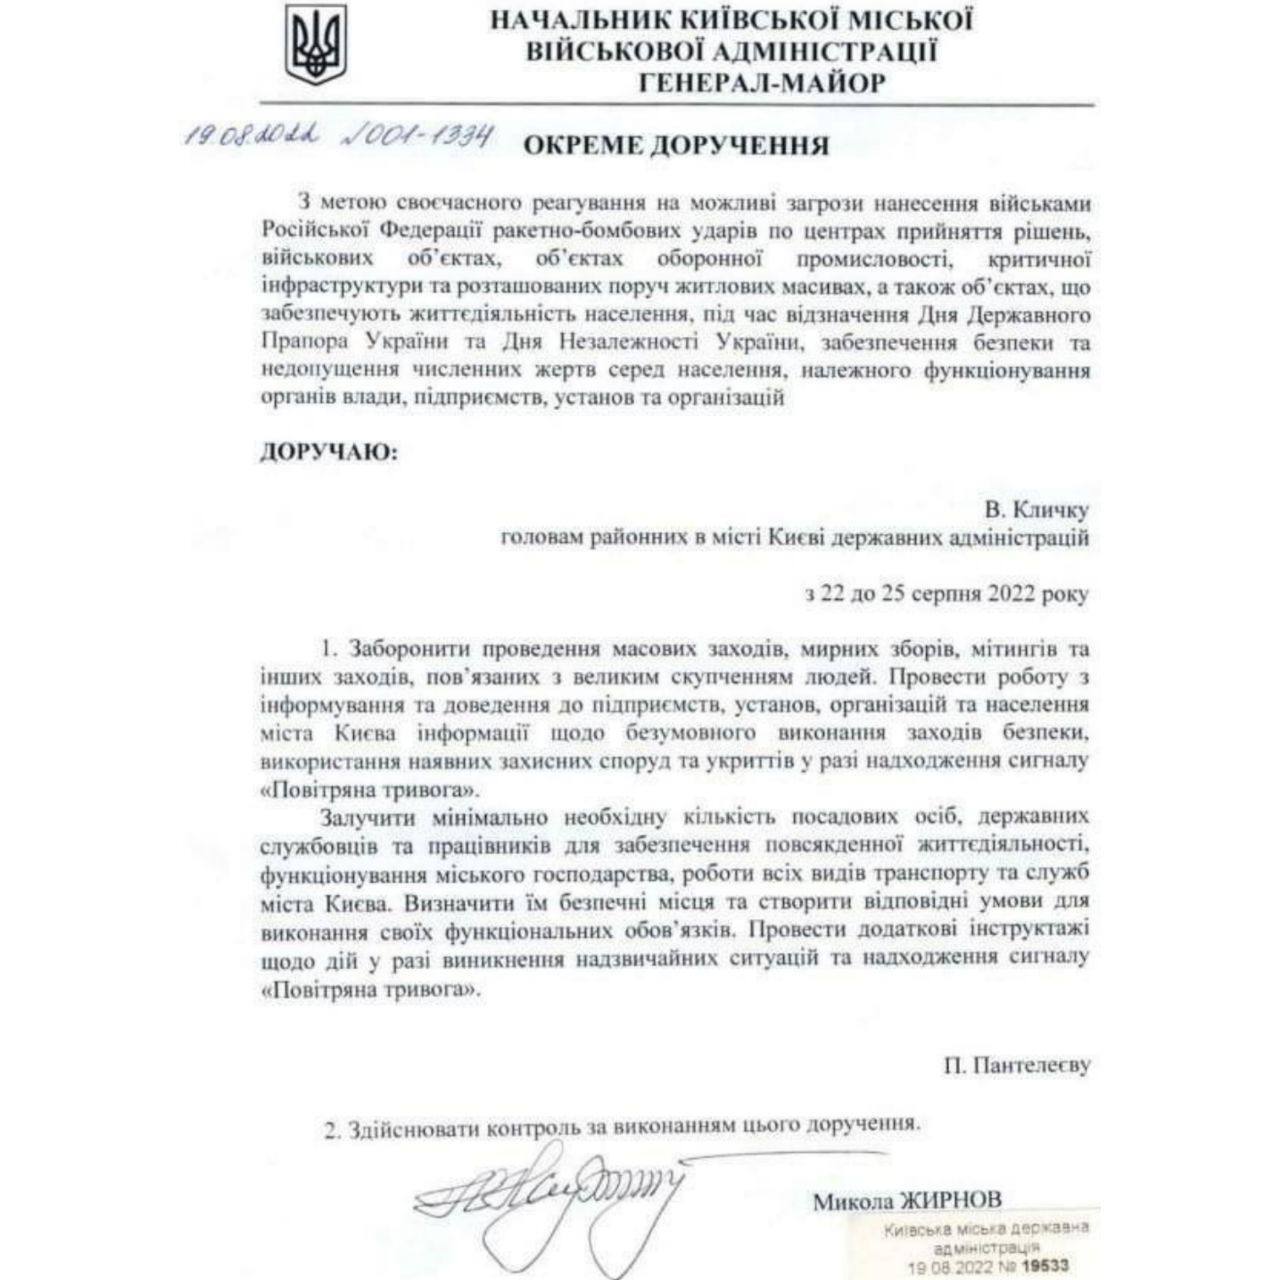 Рішення начальника Київської міської військової адміністрації Миколи Жирнова